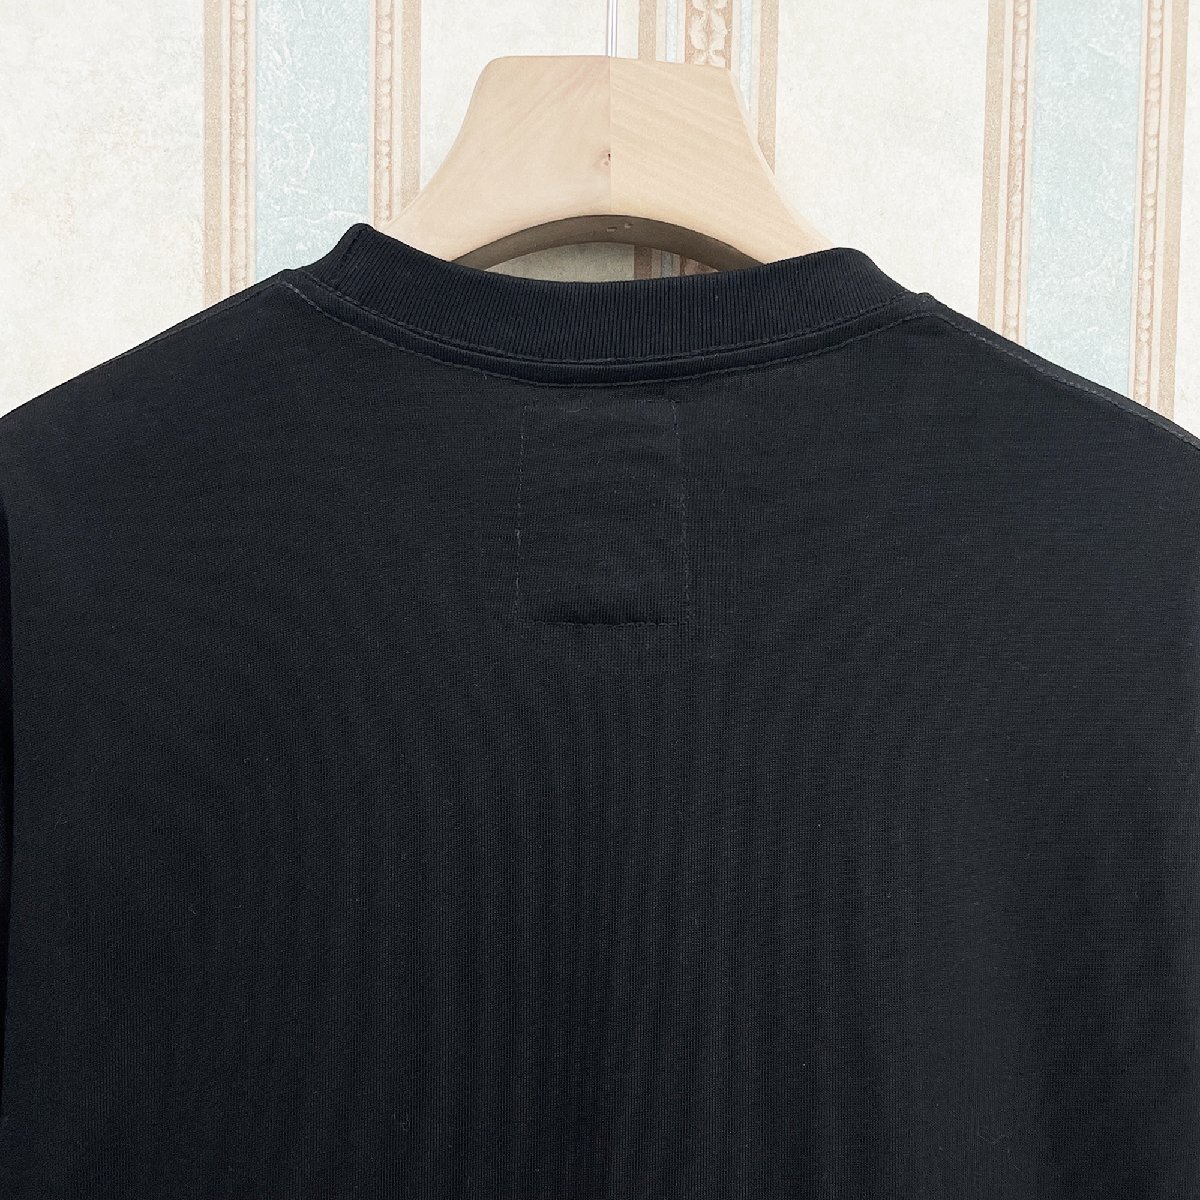 逸品 定価2万 FRANKLIN MUSK・アメリカ・ニューヨーク発 半袖Tシャツ 上質 個性 英字柄 アメカジ トップス 日常 ユニセックス サイズ2_画像7